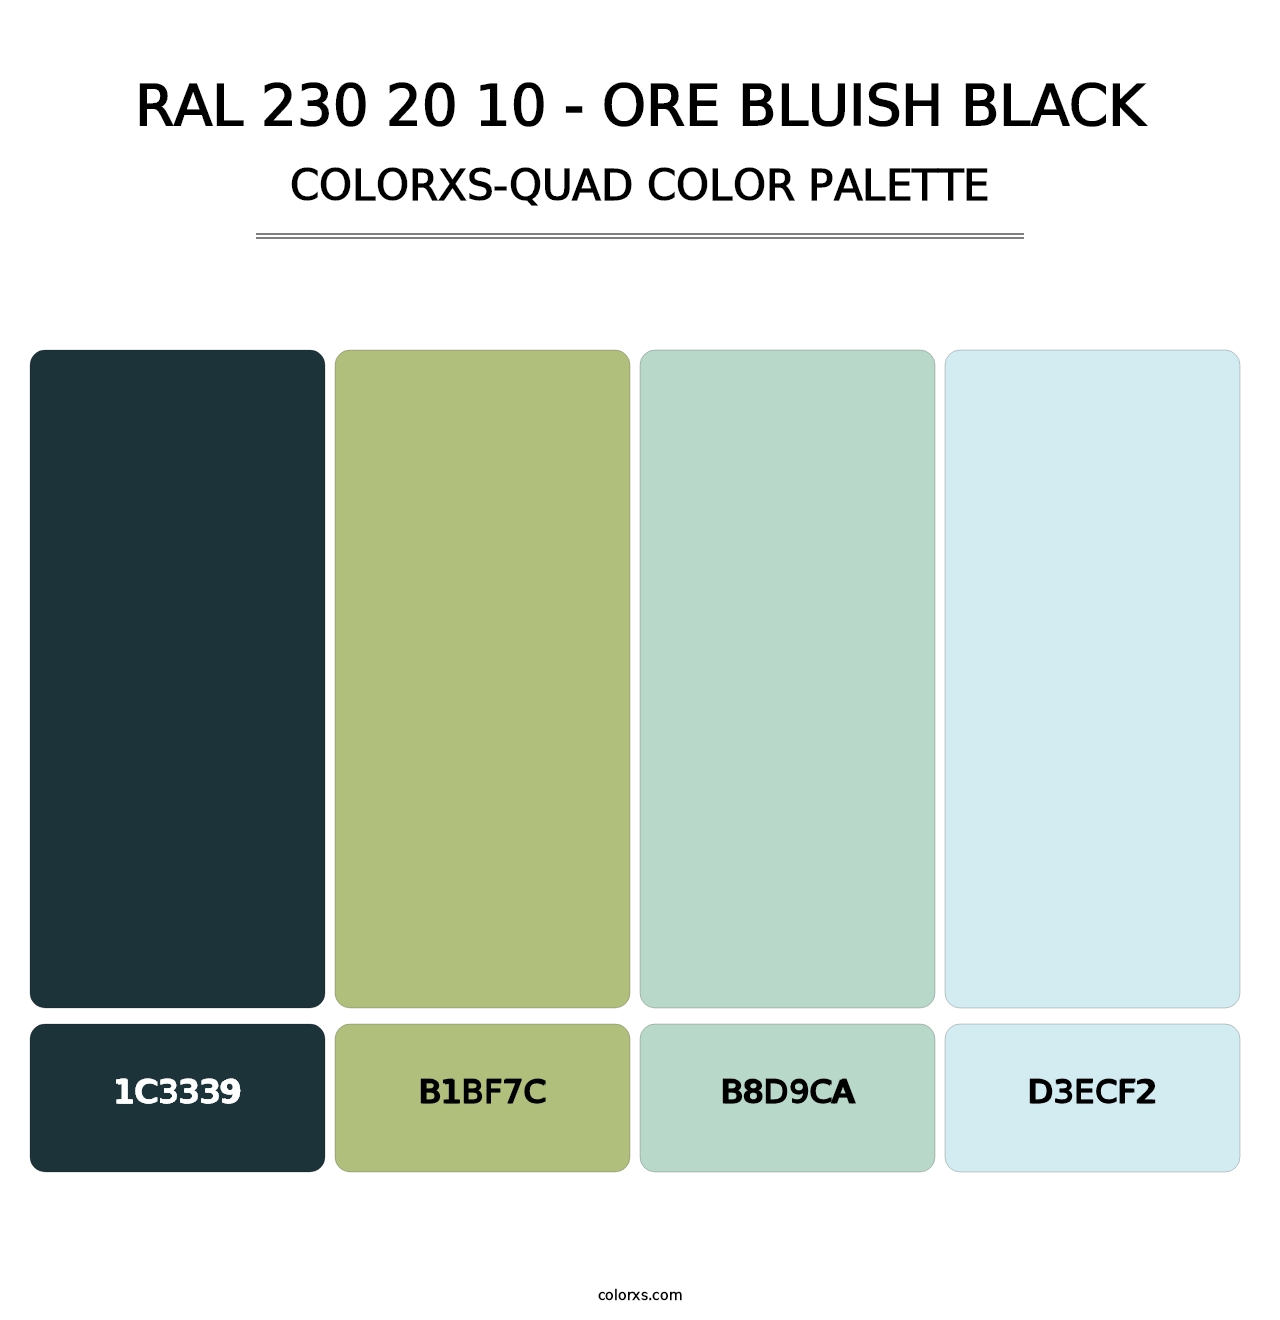 RAL 230 20 10 - Ore Bluish Black - Colorxs Quad Palette